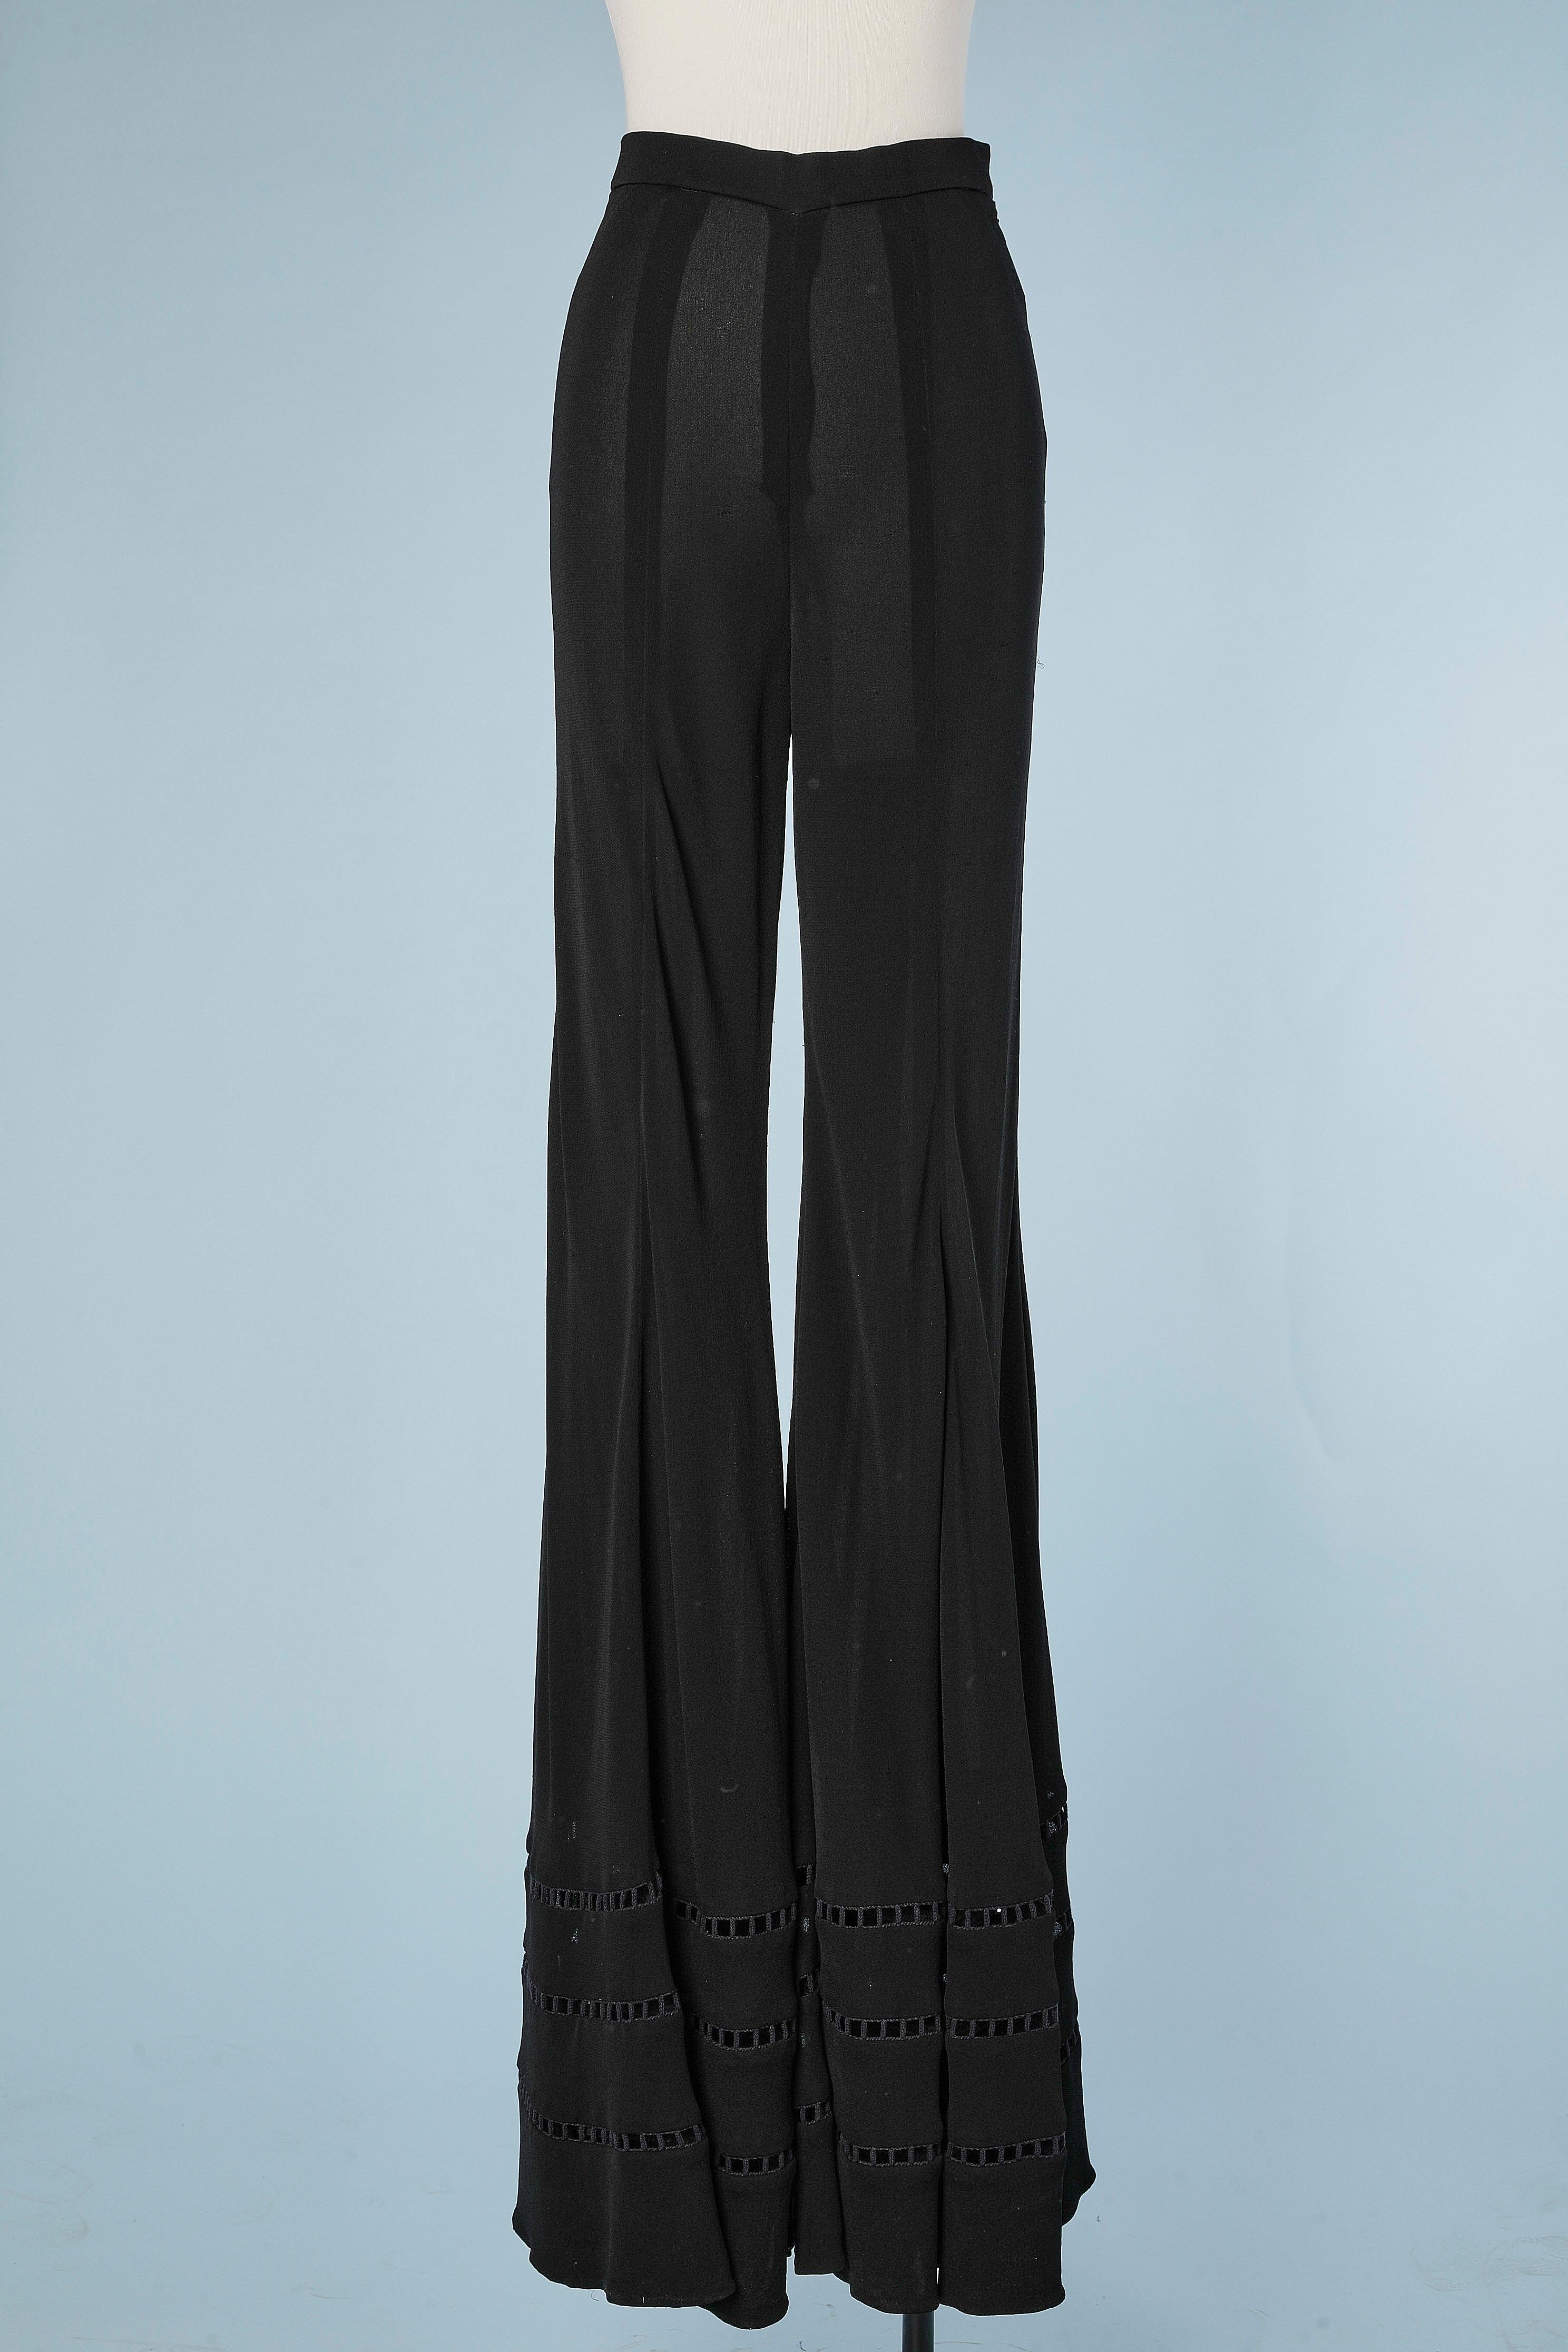 Wide-legs black crêpe jersey trouser with ajouré passementerie bottom Rochas  In Excellent Condition For Sale In Saint-Ouen-Sur-Seine, FR